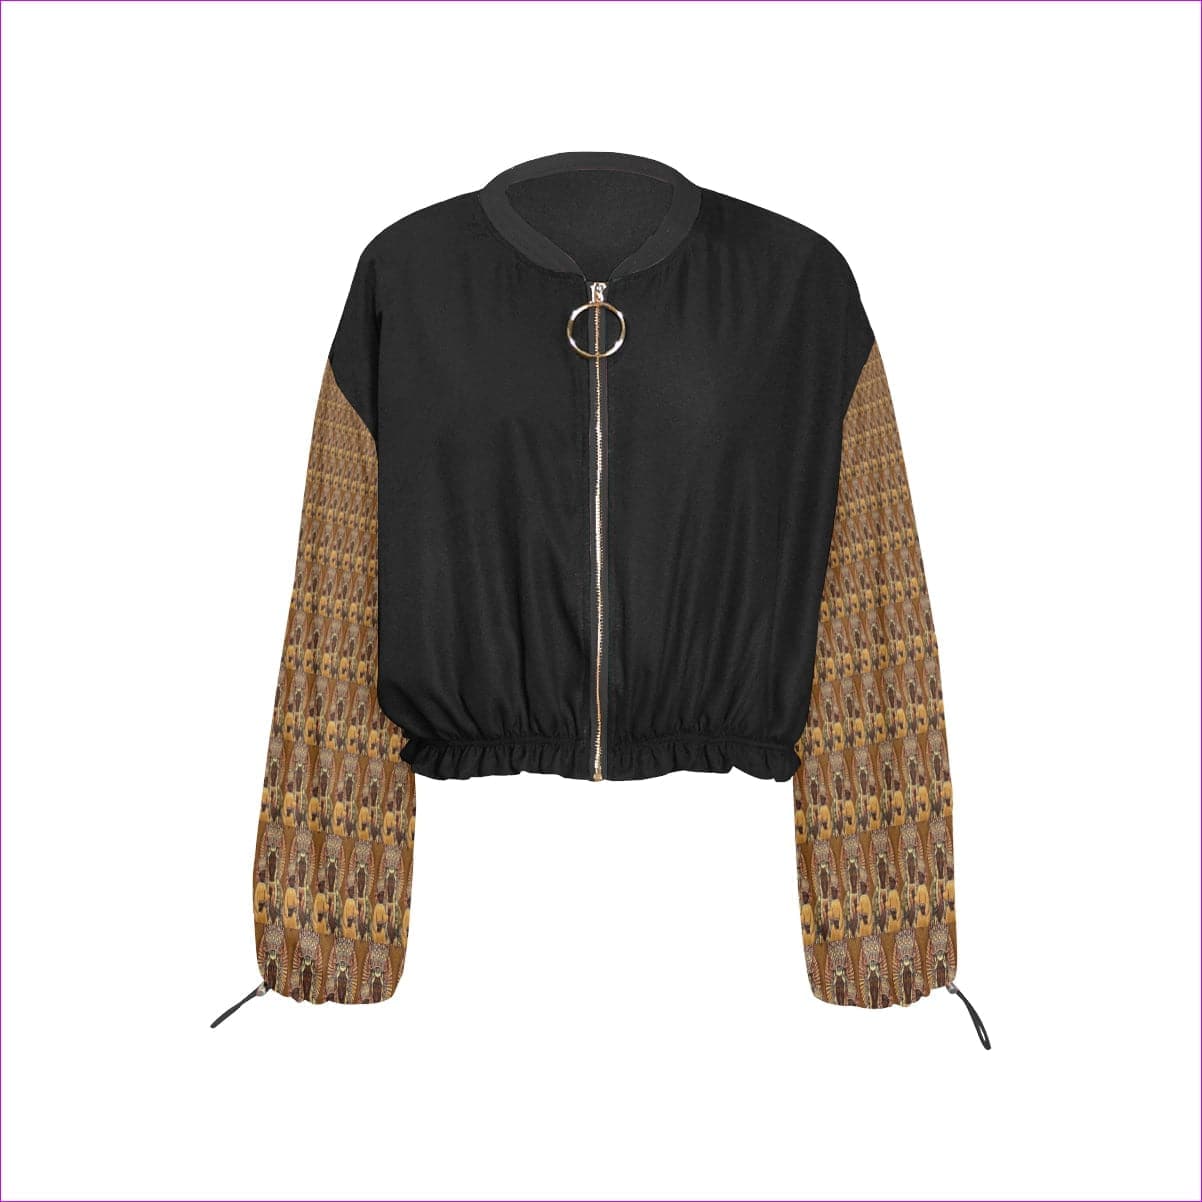 - Black Madonna Cropped Chiffon Jacket - 2 variations - womens coat at TFC&H Co.